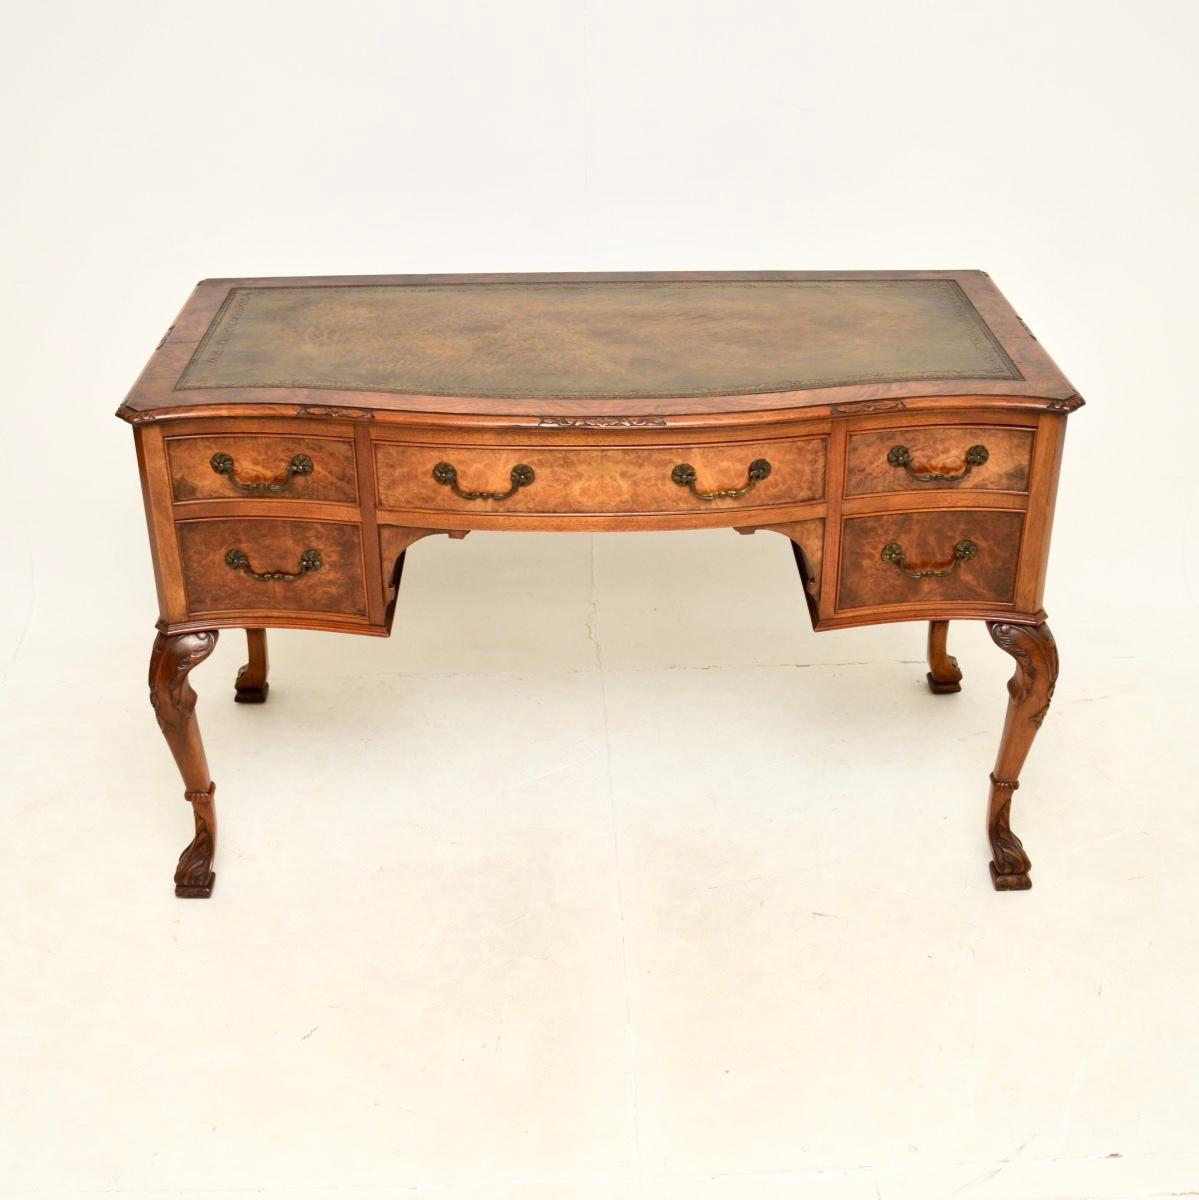 Ein beeindruckender und sehr gut gemachter antiker Schreibtisch mit Lederplatte aus Wurzelnussholz. Sie wurde in England hergestellt und stammt aus der Zeit um 1900-20.

Die Qualität ist hervorragend, die Maserung des Wurzelholzes ist atemberaubend